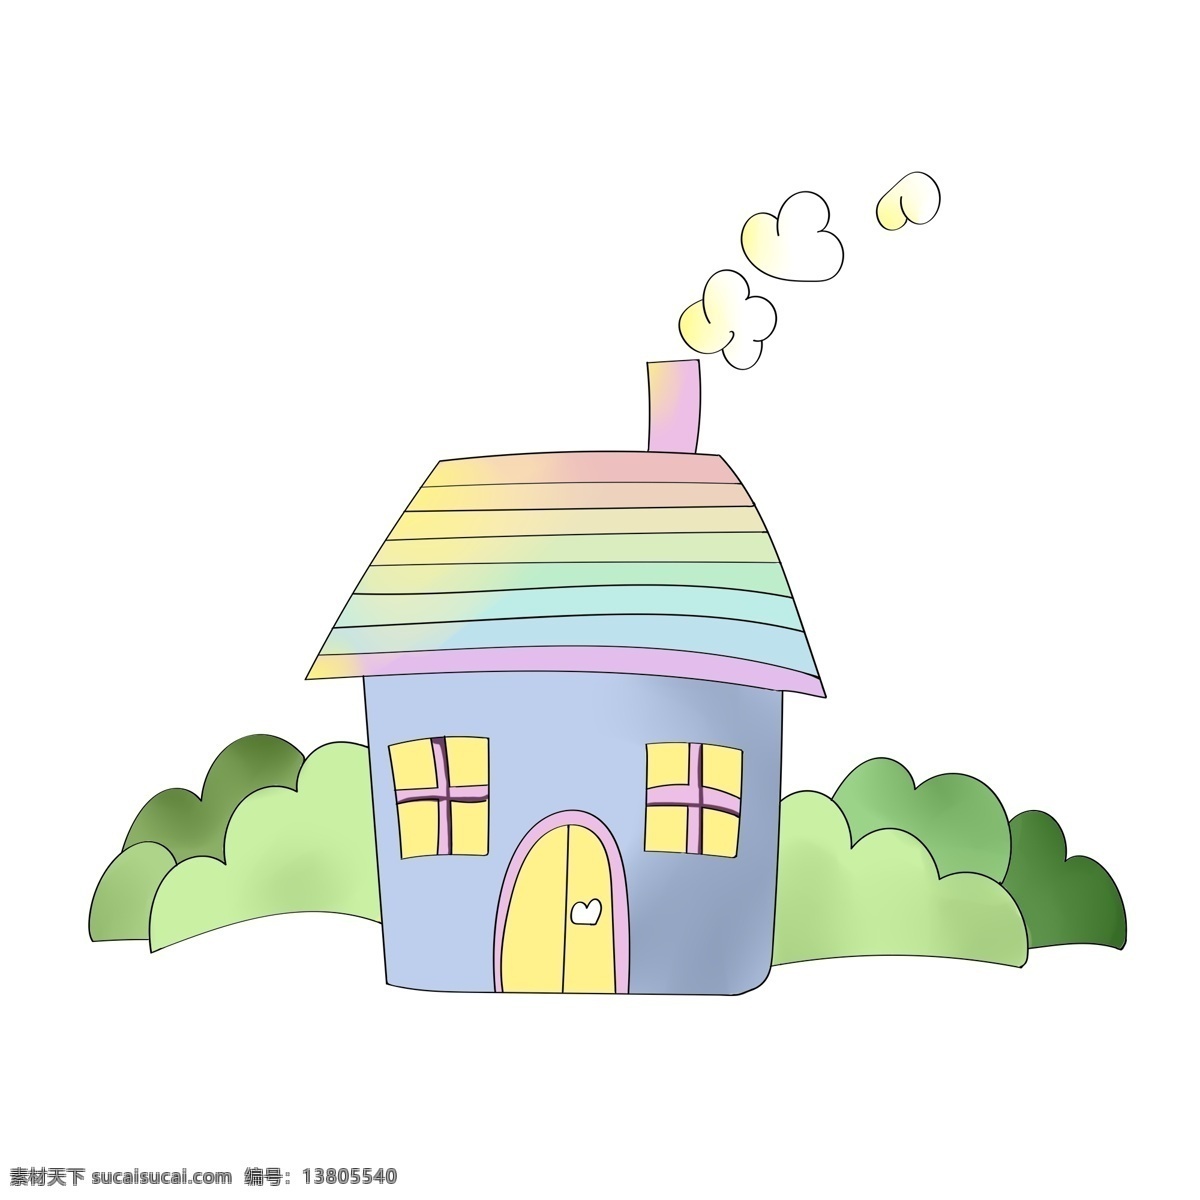 立体 彩色 房屋 插图 小清新房屋 彩色房屋 精美的房屋 卡通房屋 白色烟雾 绿色植物 黄色窗户 房屋插图